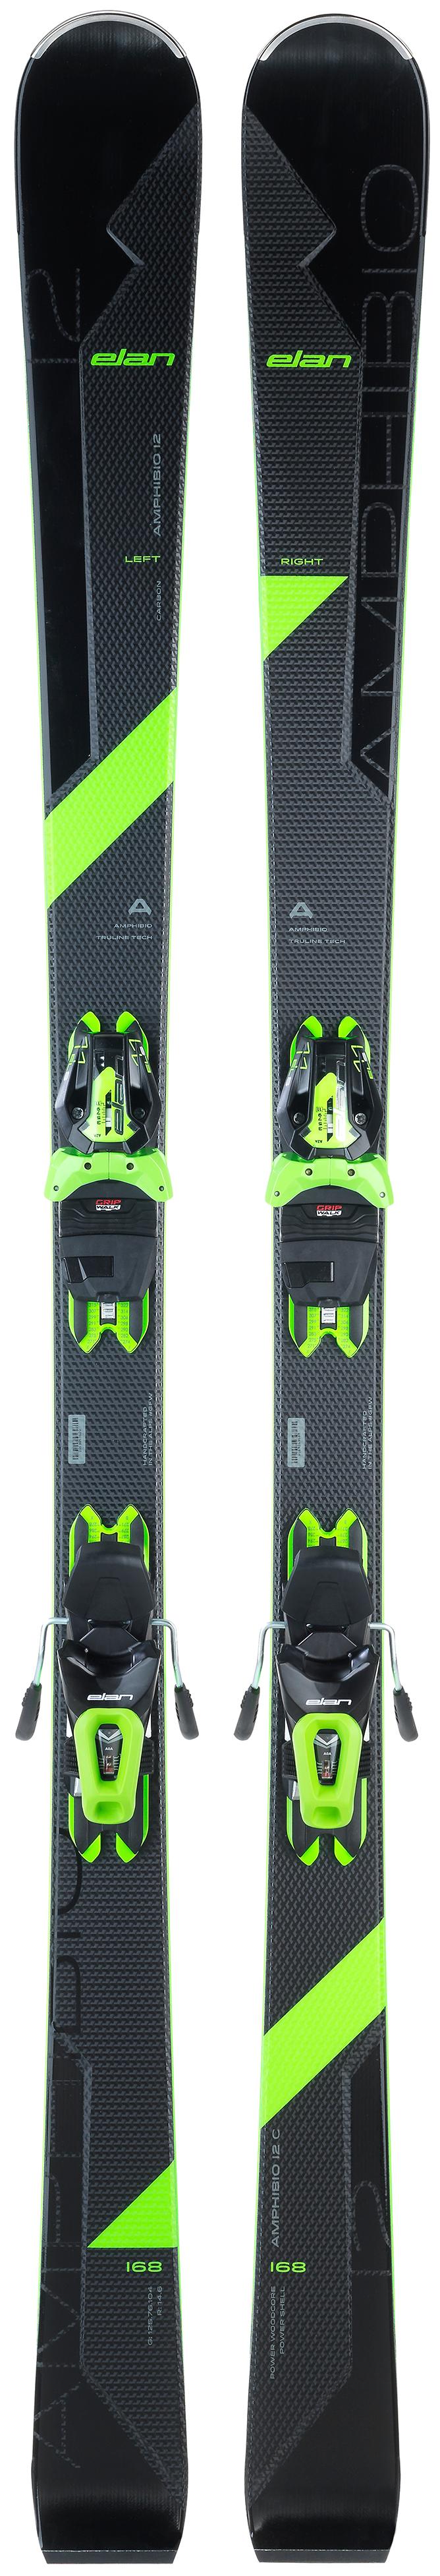 Горные лыжи Elan Amphibio 12C Powershift + Els 11 Shift 2021, black/green, 168 см